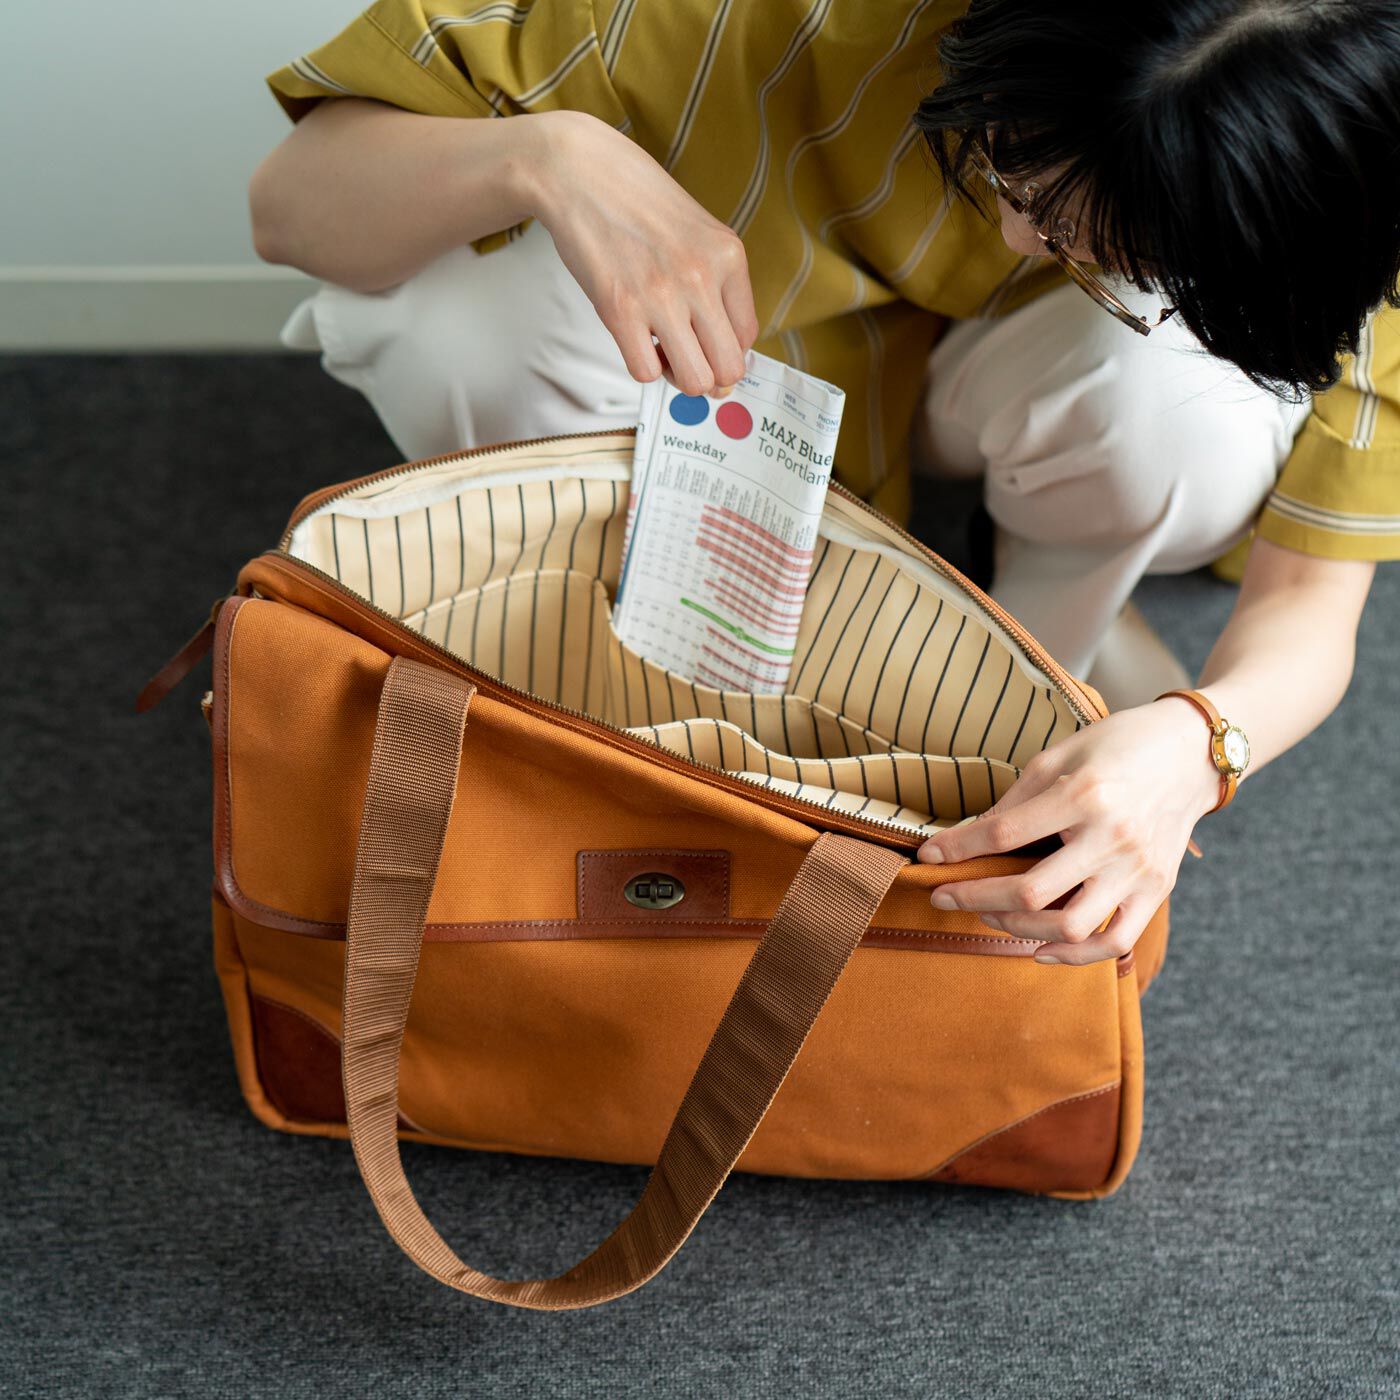 ＆Stories|アートディレクターと作った 職人帆布と本革遣いのトラベルバッグ〈ヴィンテージキャメル〉|「書類と衣類をひとつの鞄に整理して入れられること」という置田さんの理想通り、大容量でありながら、中身が仕分けできる鞄です。